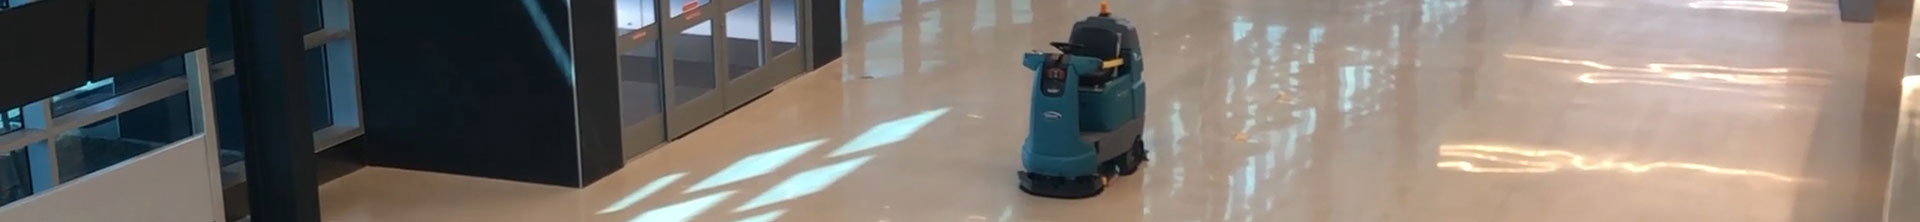 La restregadora robotizada de pisos T7AMR limpiando el aeropuerto